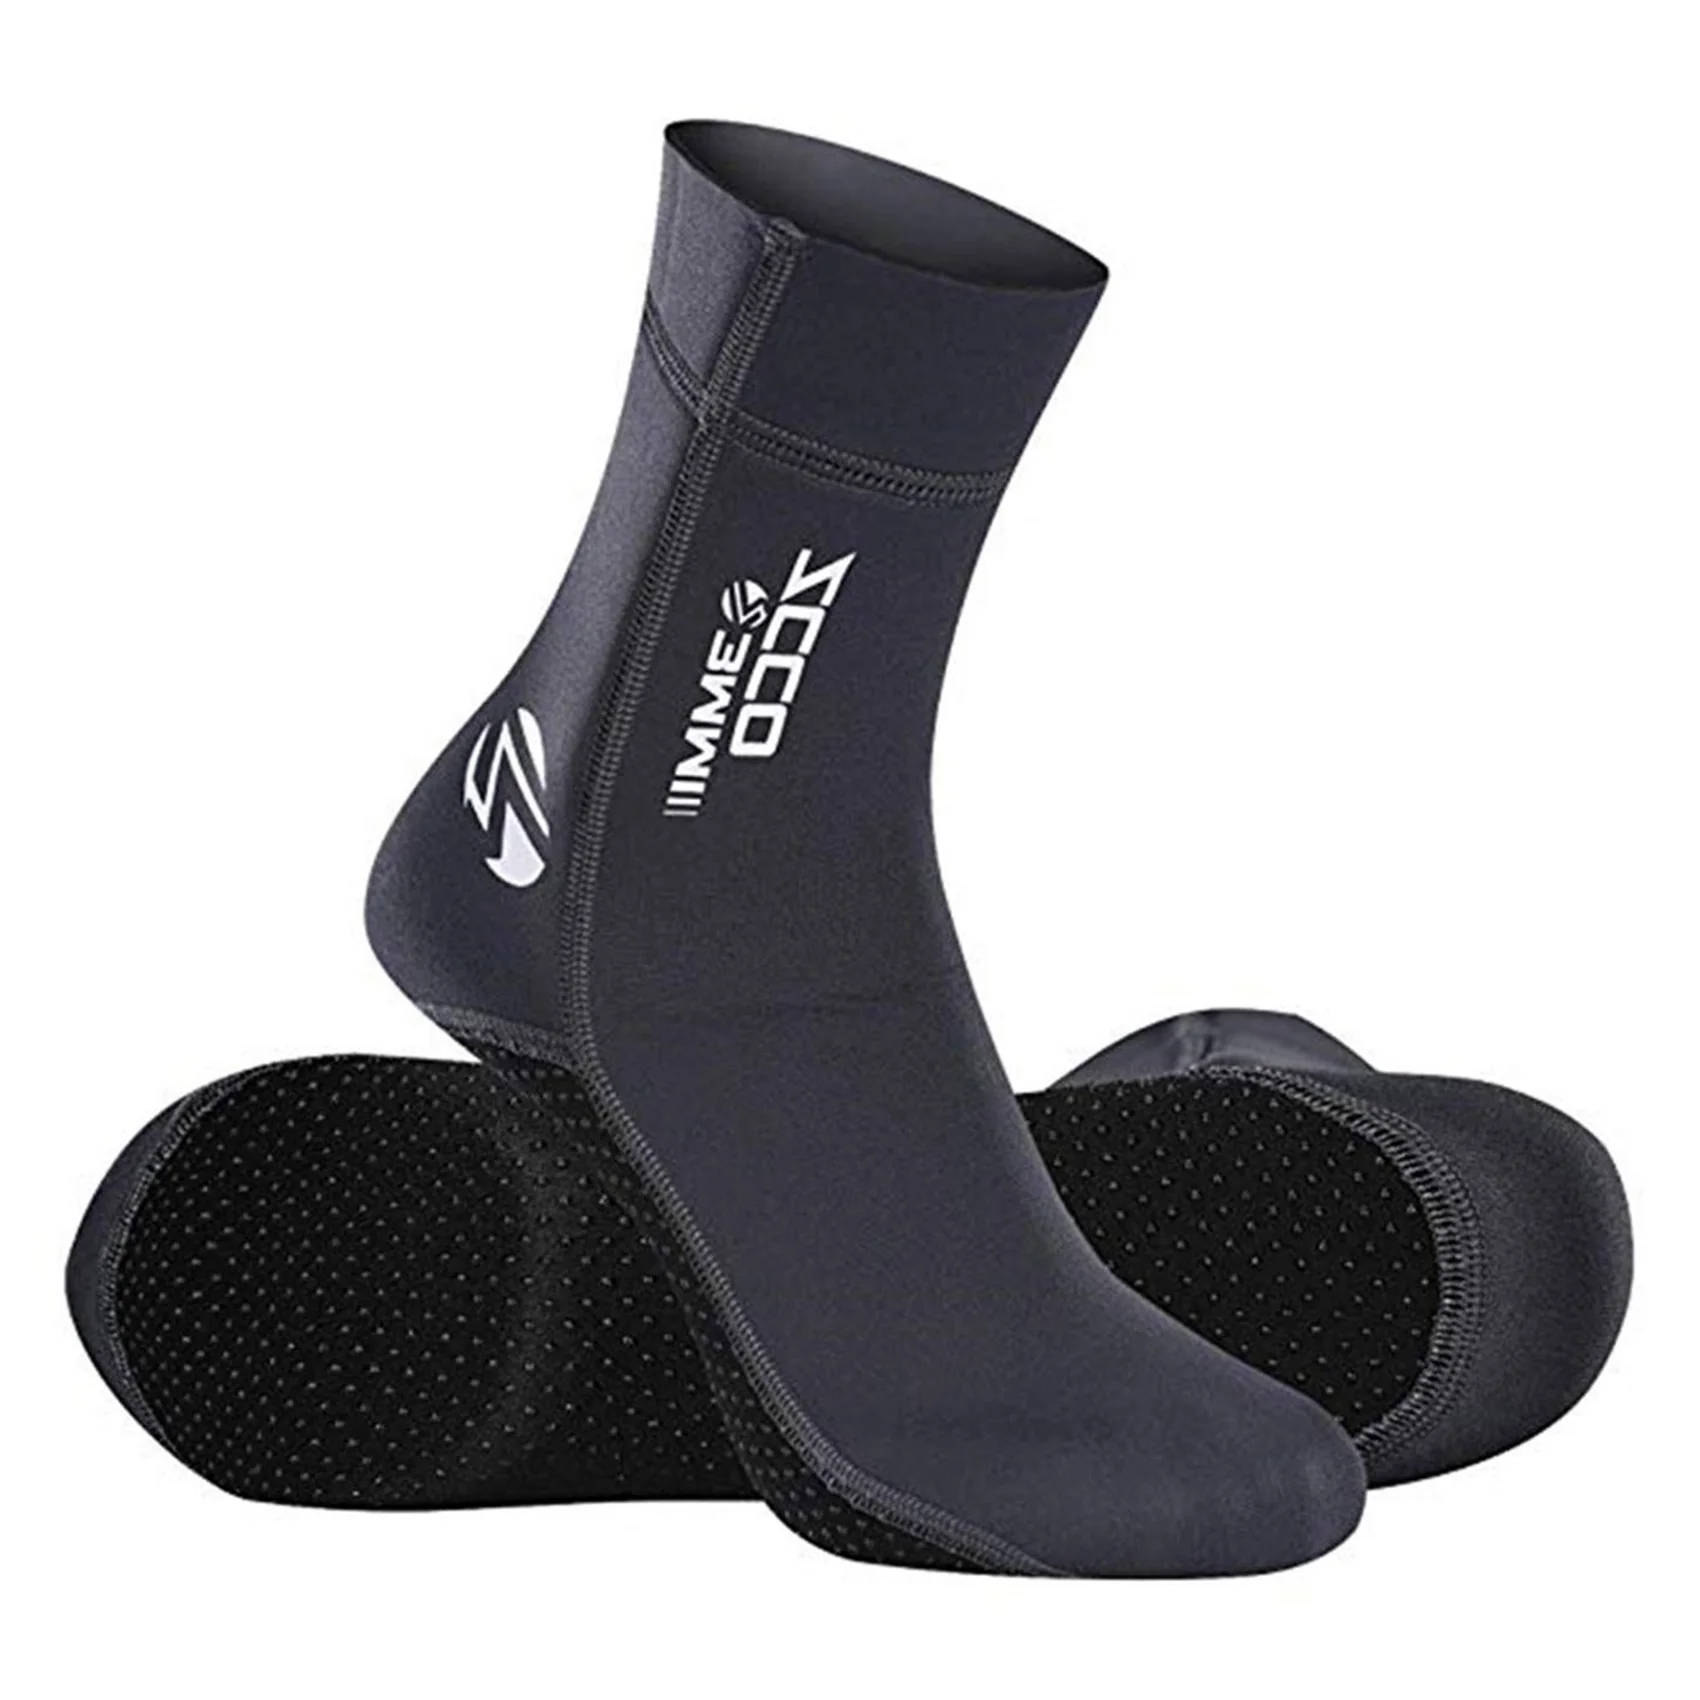 

Неопреновые носки для дайвинга ZCCO, 3 мм, гидрокостюмы для дайвинга, водные женские теплые ботинки для серфинга, Пляжные Носки для подводного плавания, водных видов спорта L